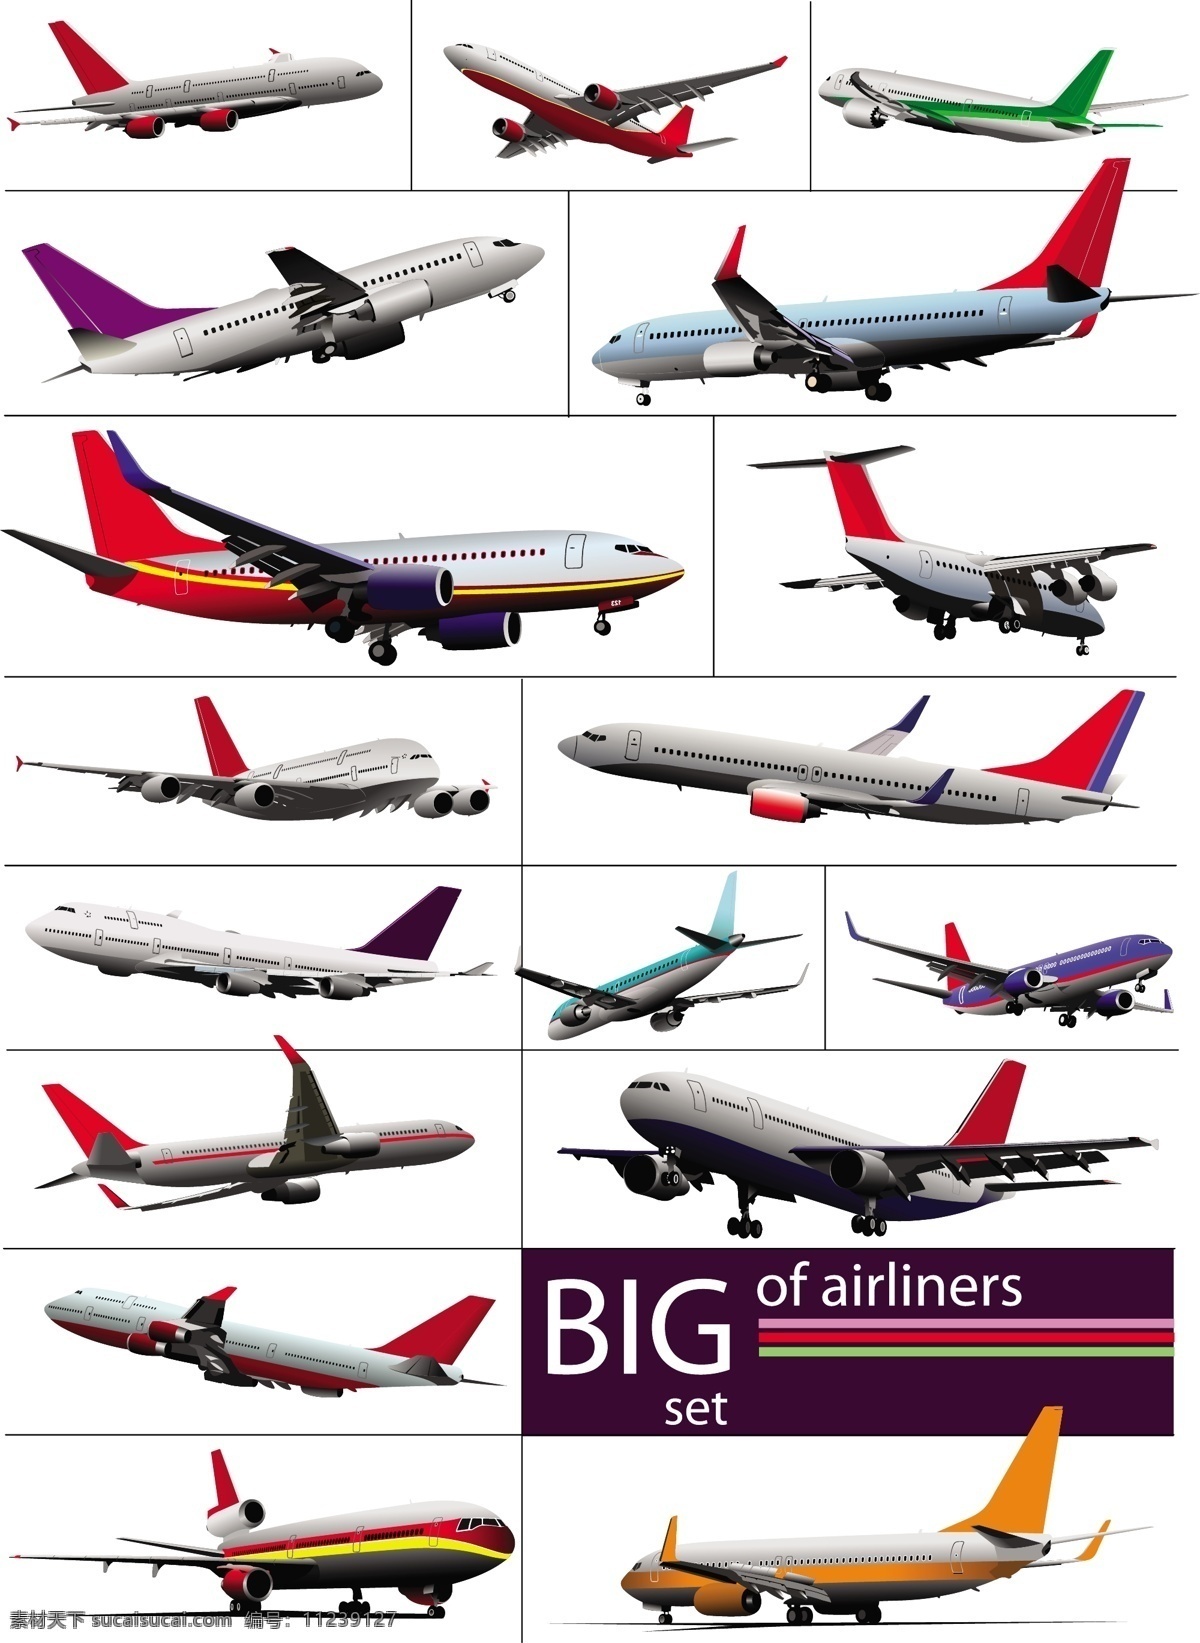 大 飞机模型 集 向量 飞机 模型 矢量交通 矢量图 日常生活